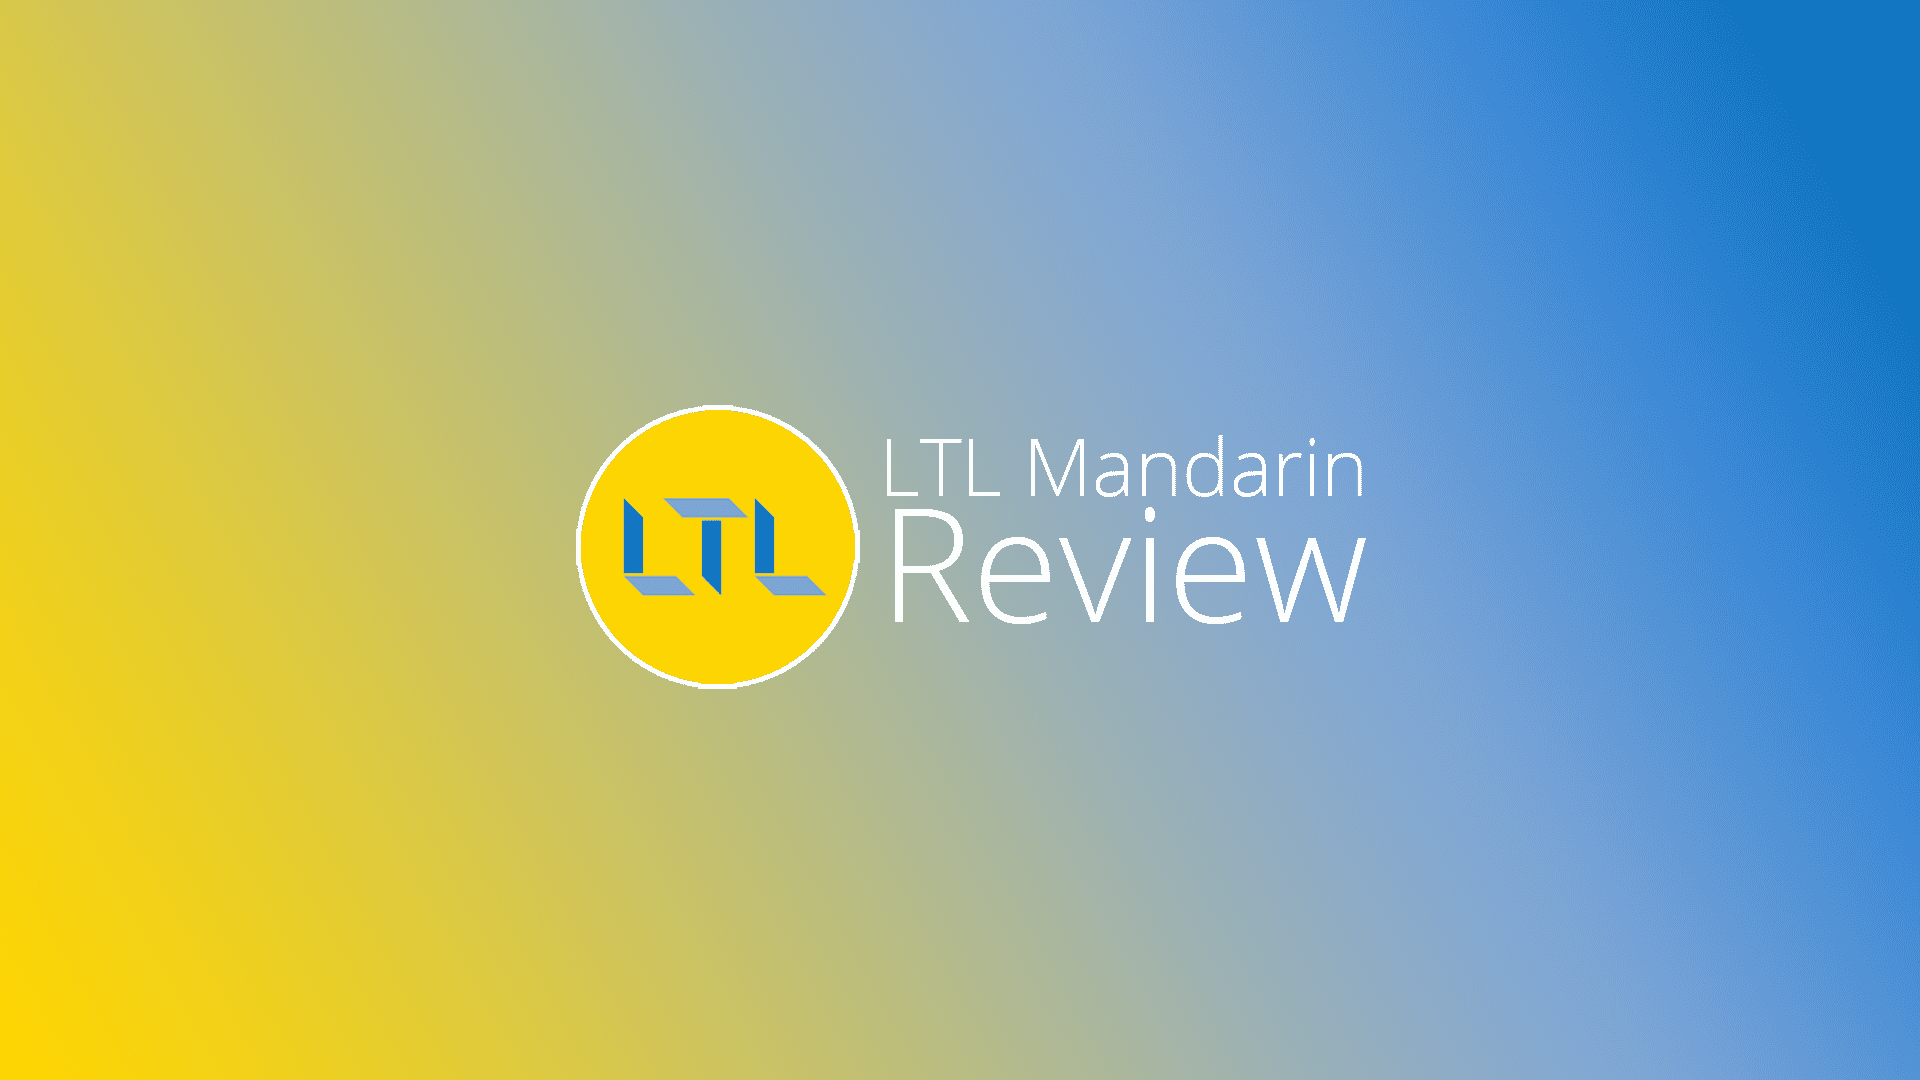 ltl-review.png